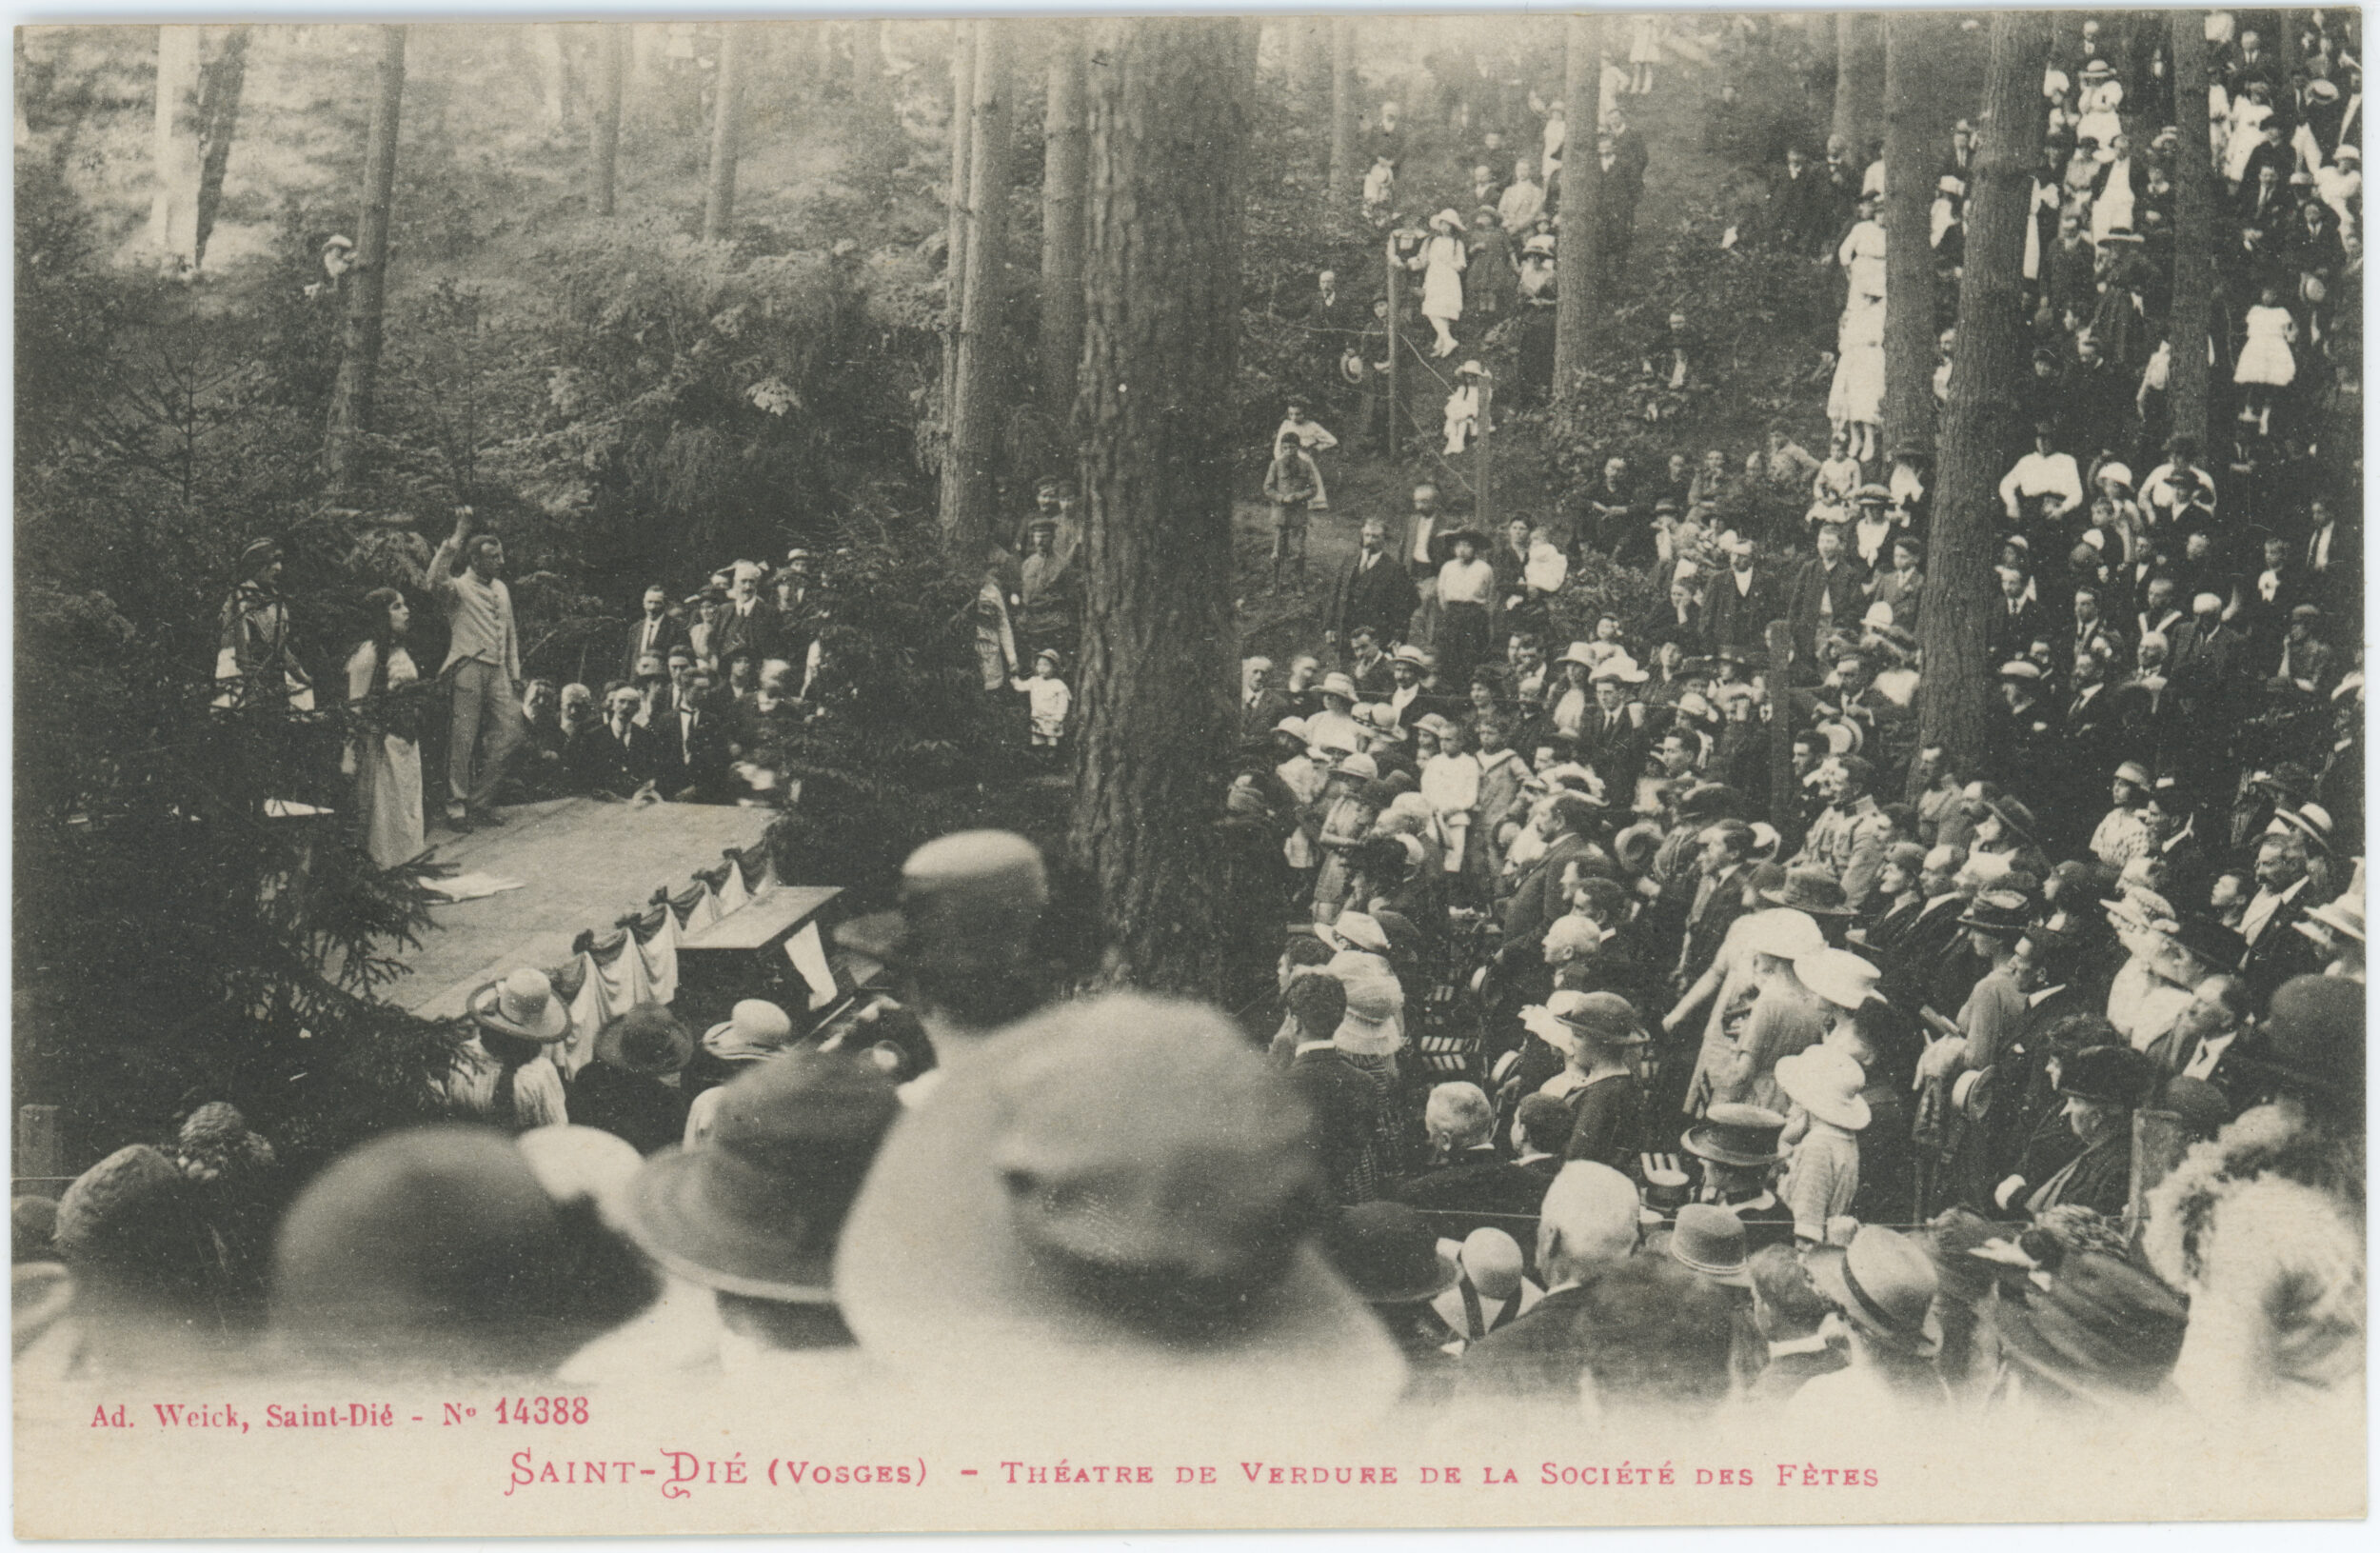 « St-Dié — Forêt St-Martin — Le Théâtre de Verdure ». Carte postale illustrée